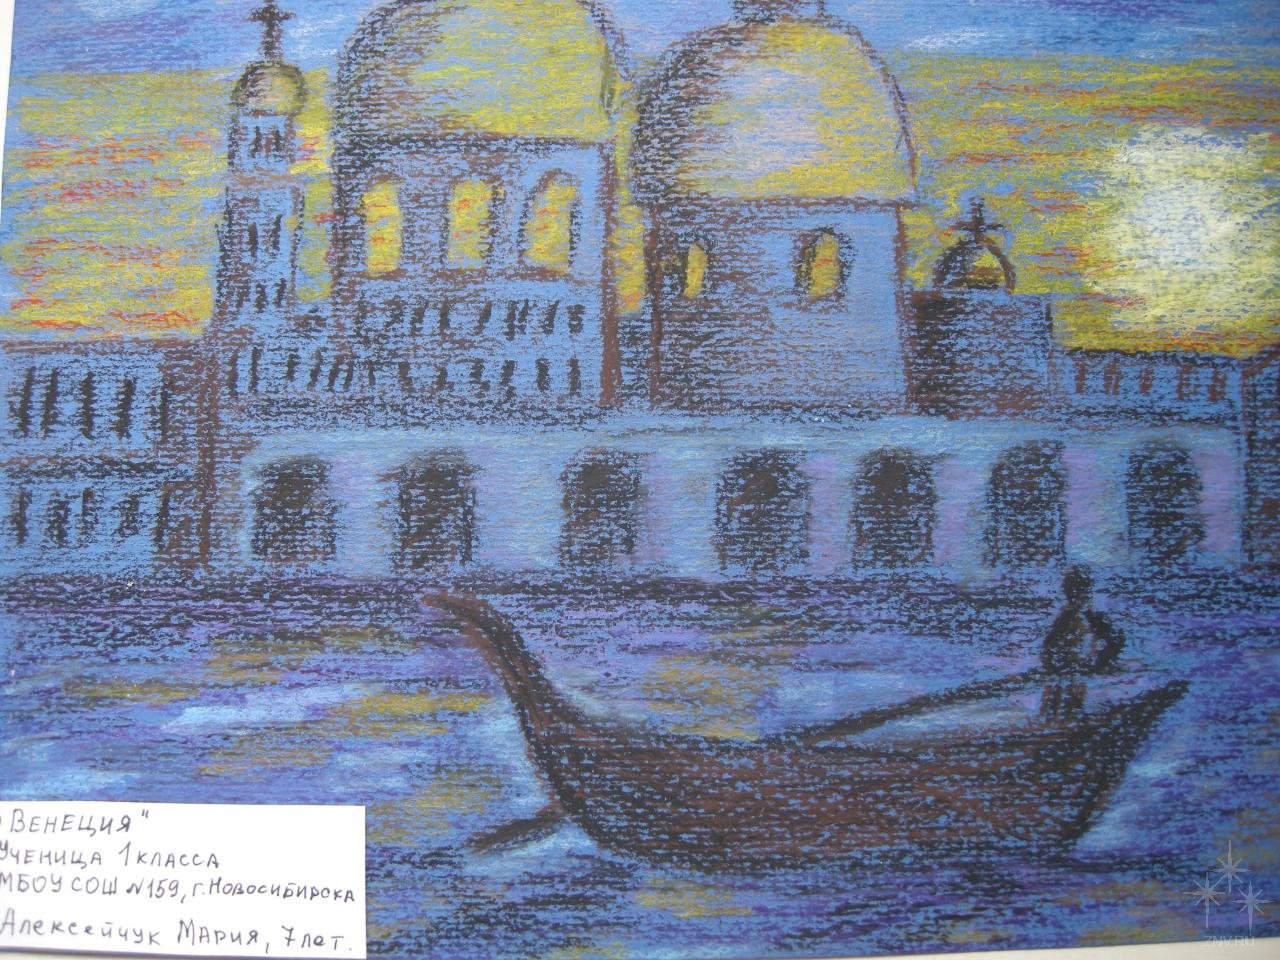 Иллюстрация к романсу Глинки венецианская ночь